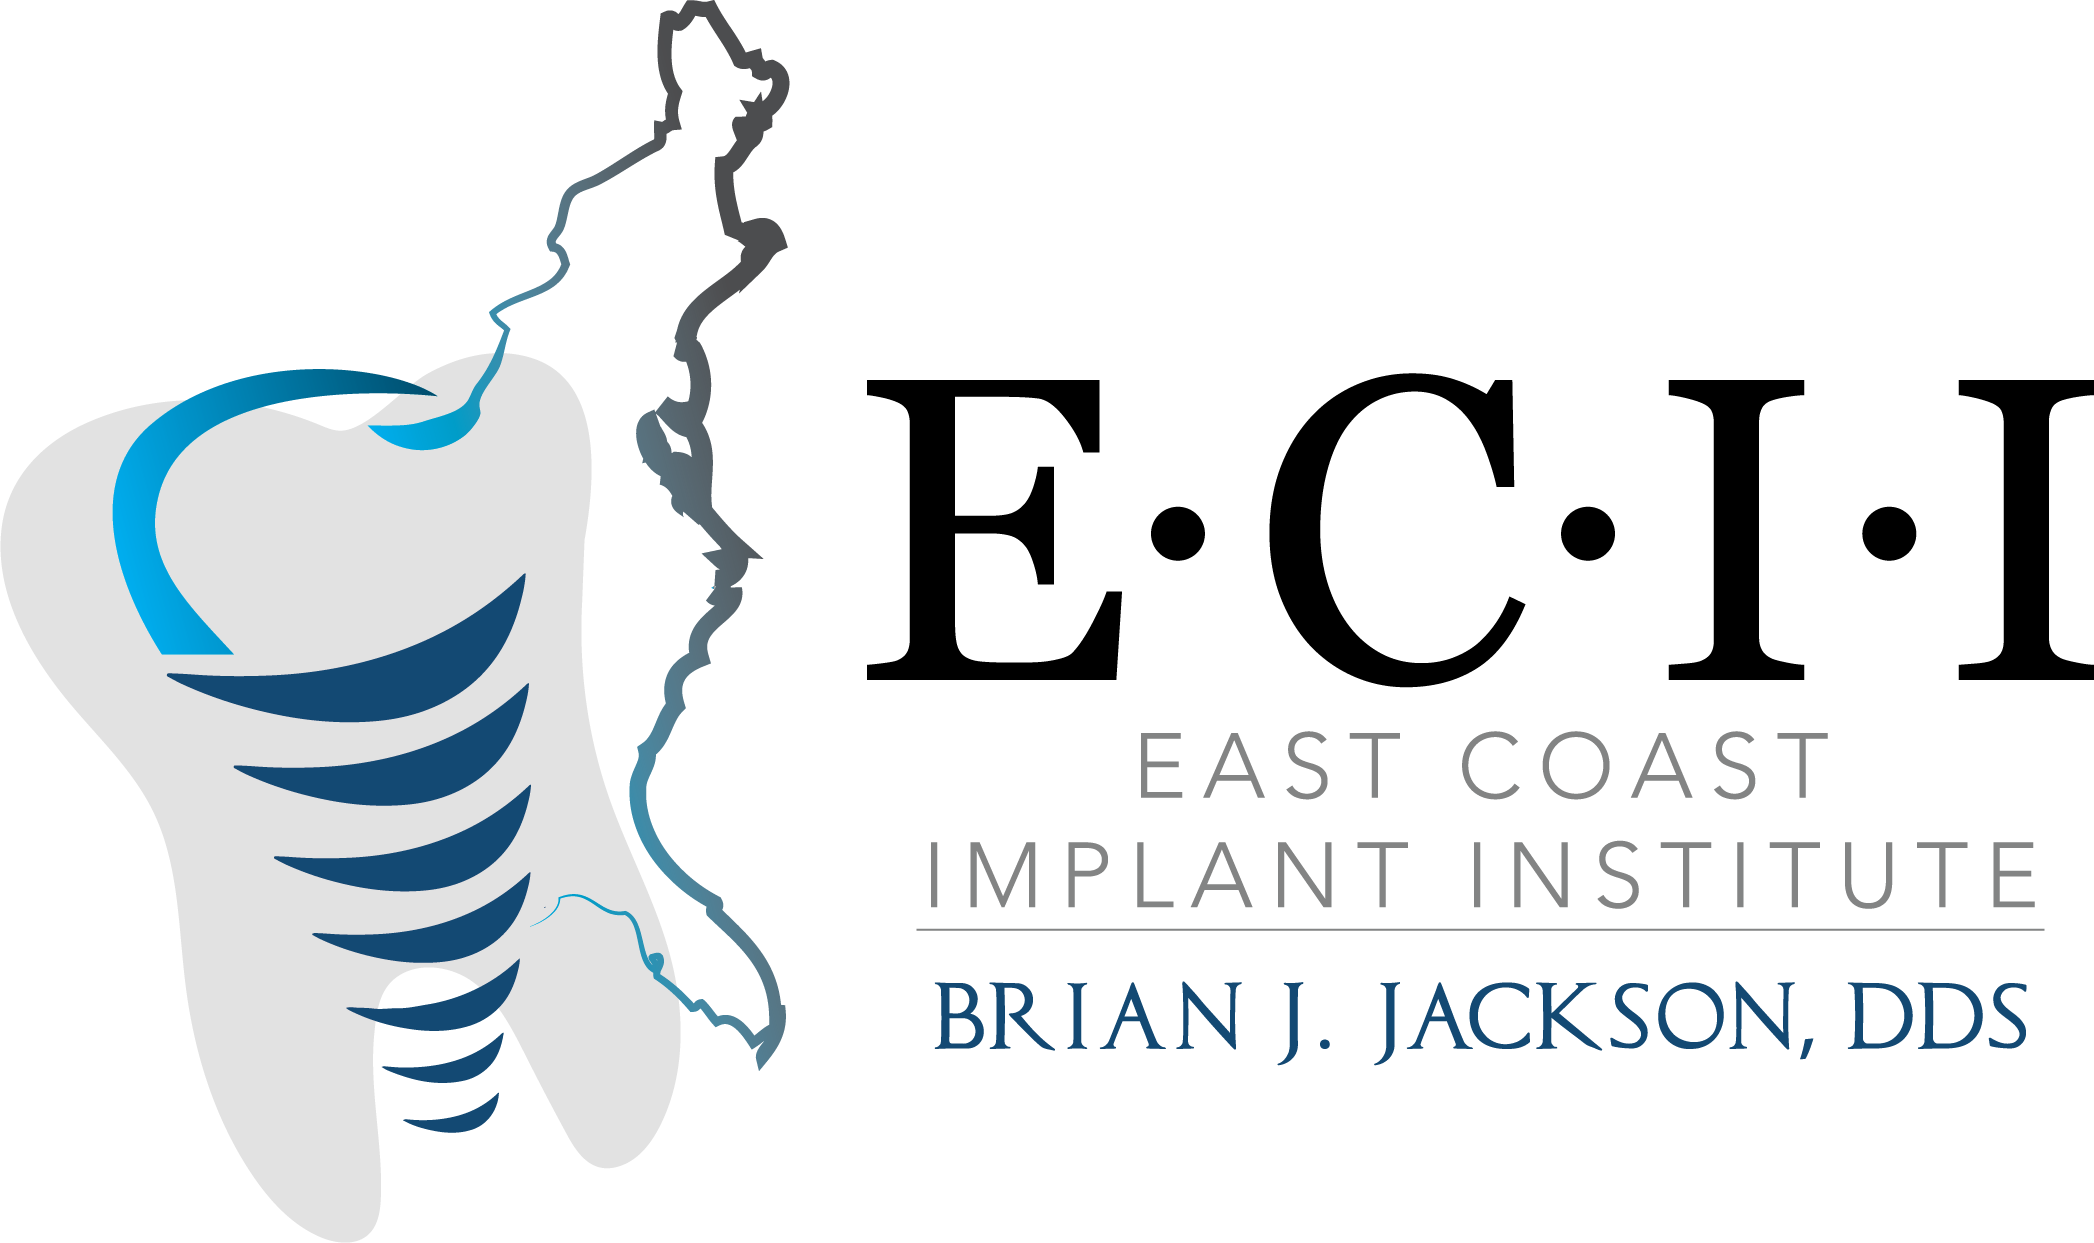 East Coast Implant Institute